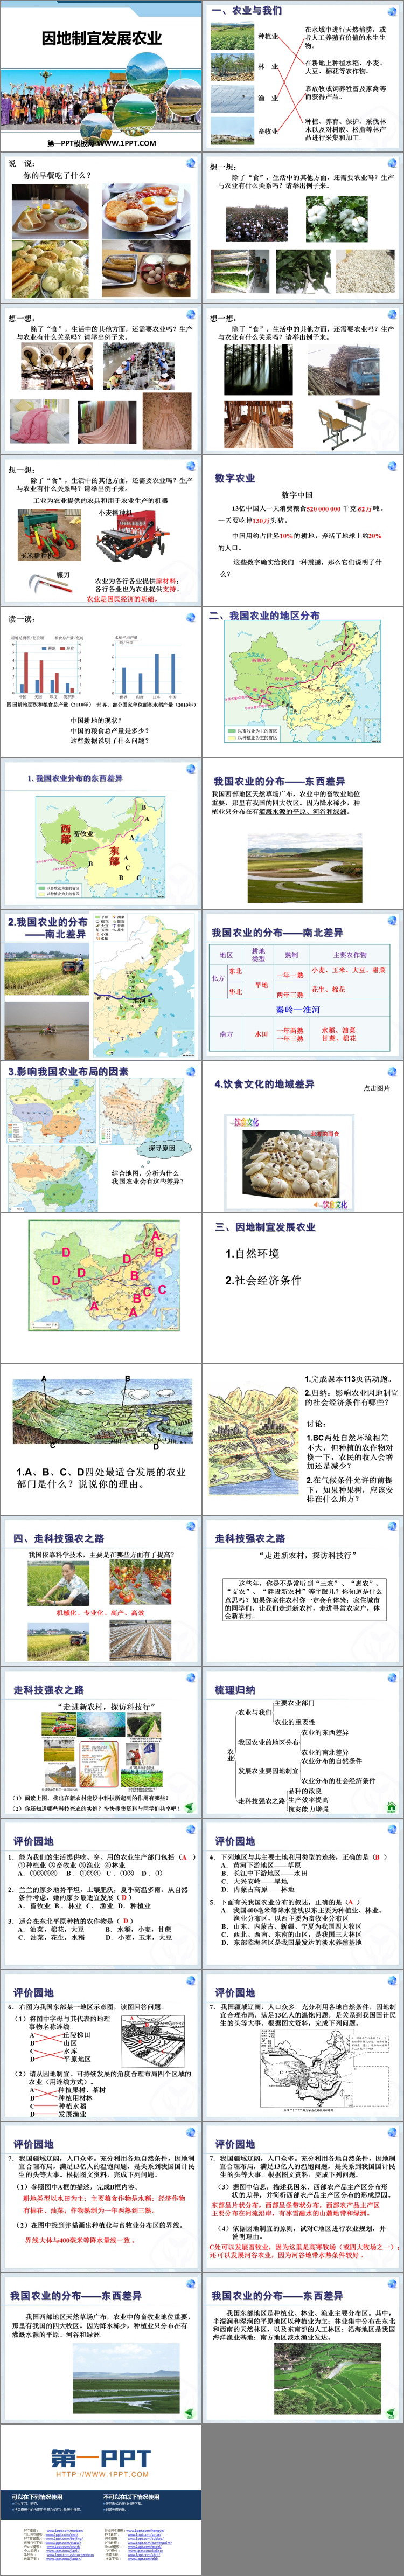 《因地制宜发展农业》PPT免费课件-预览图02